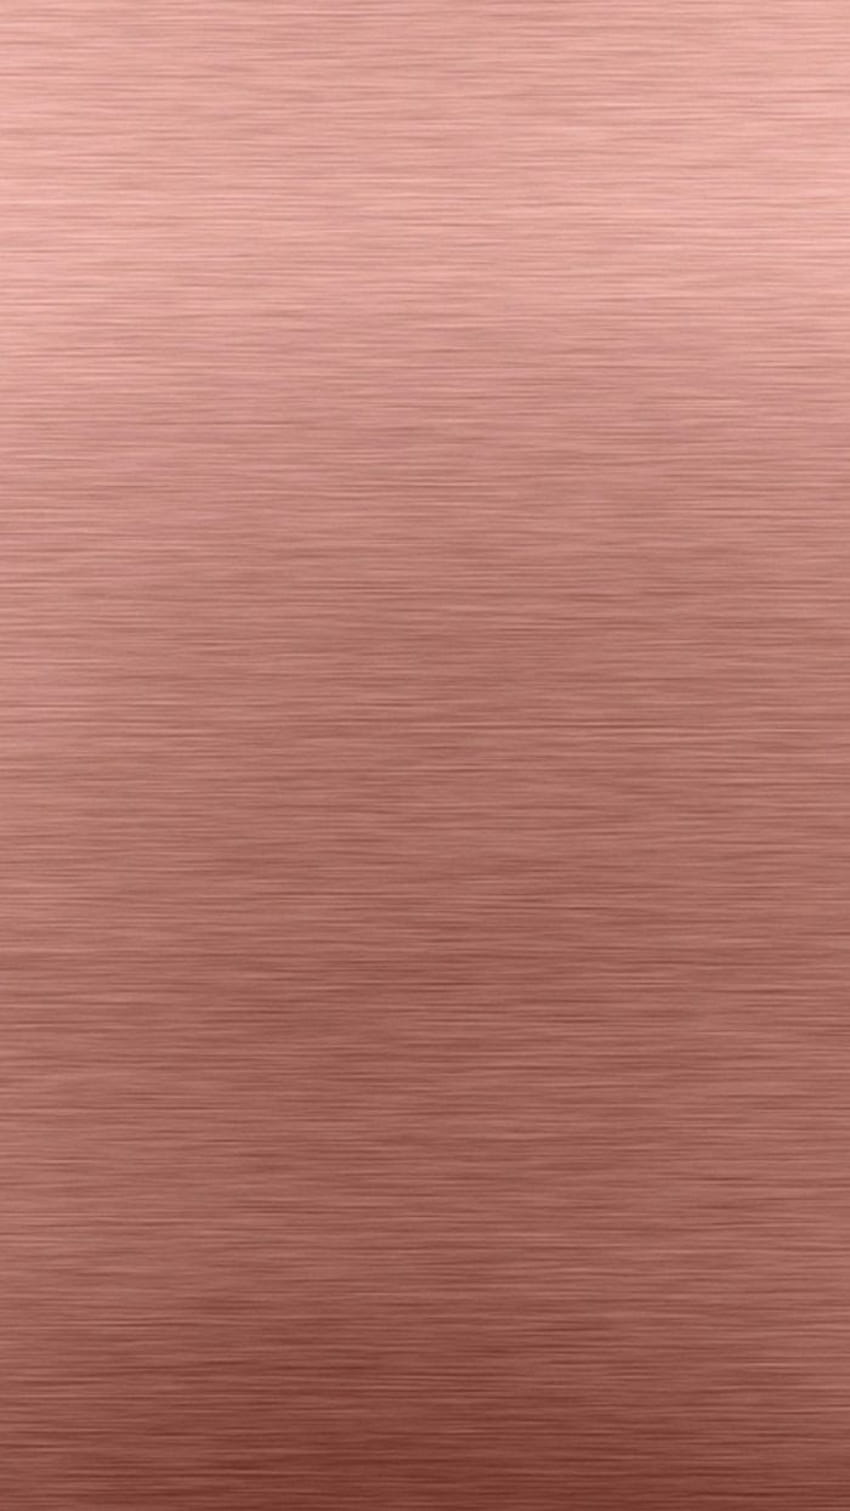 Android Rose Gold Alta resolución 1080X1920. Planos de fundo, Fundos de cor sólido, Papel de parede cor de rosa, Rose Gold Metallic fondo de pantalla del teléfono